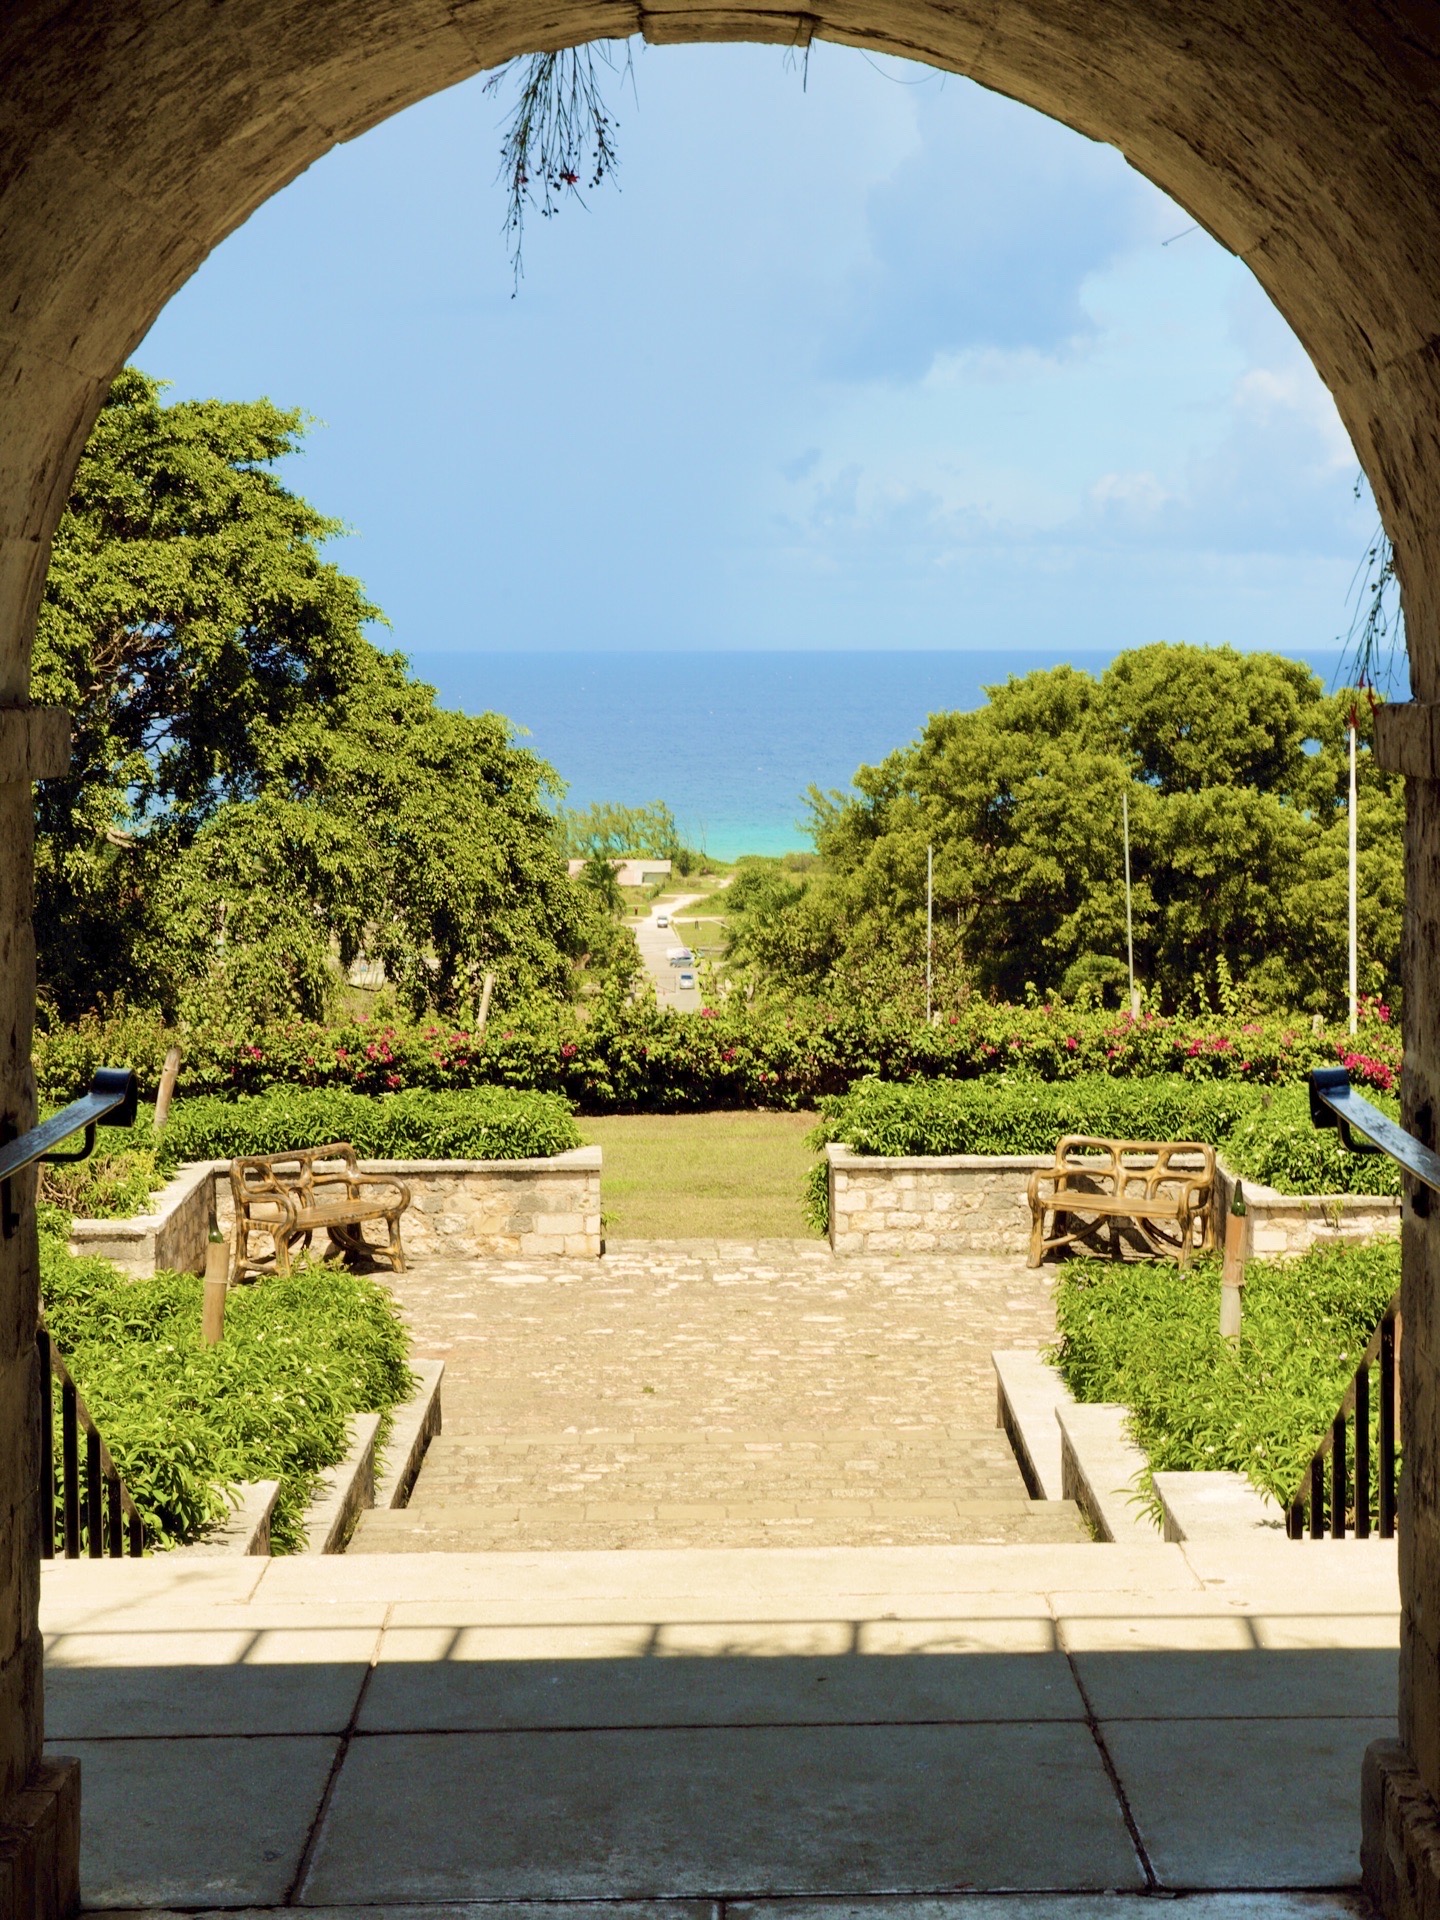 蒙特哥贝是加勒比海岛国牙买加的第二大城市，也是牙买加的主要港口和商业中心，旅游业是当地的主要支柱产业